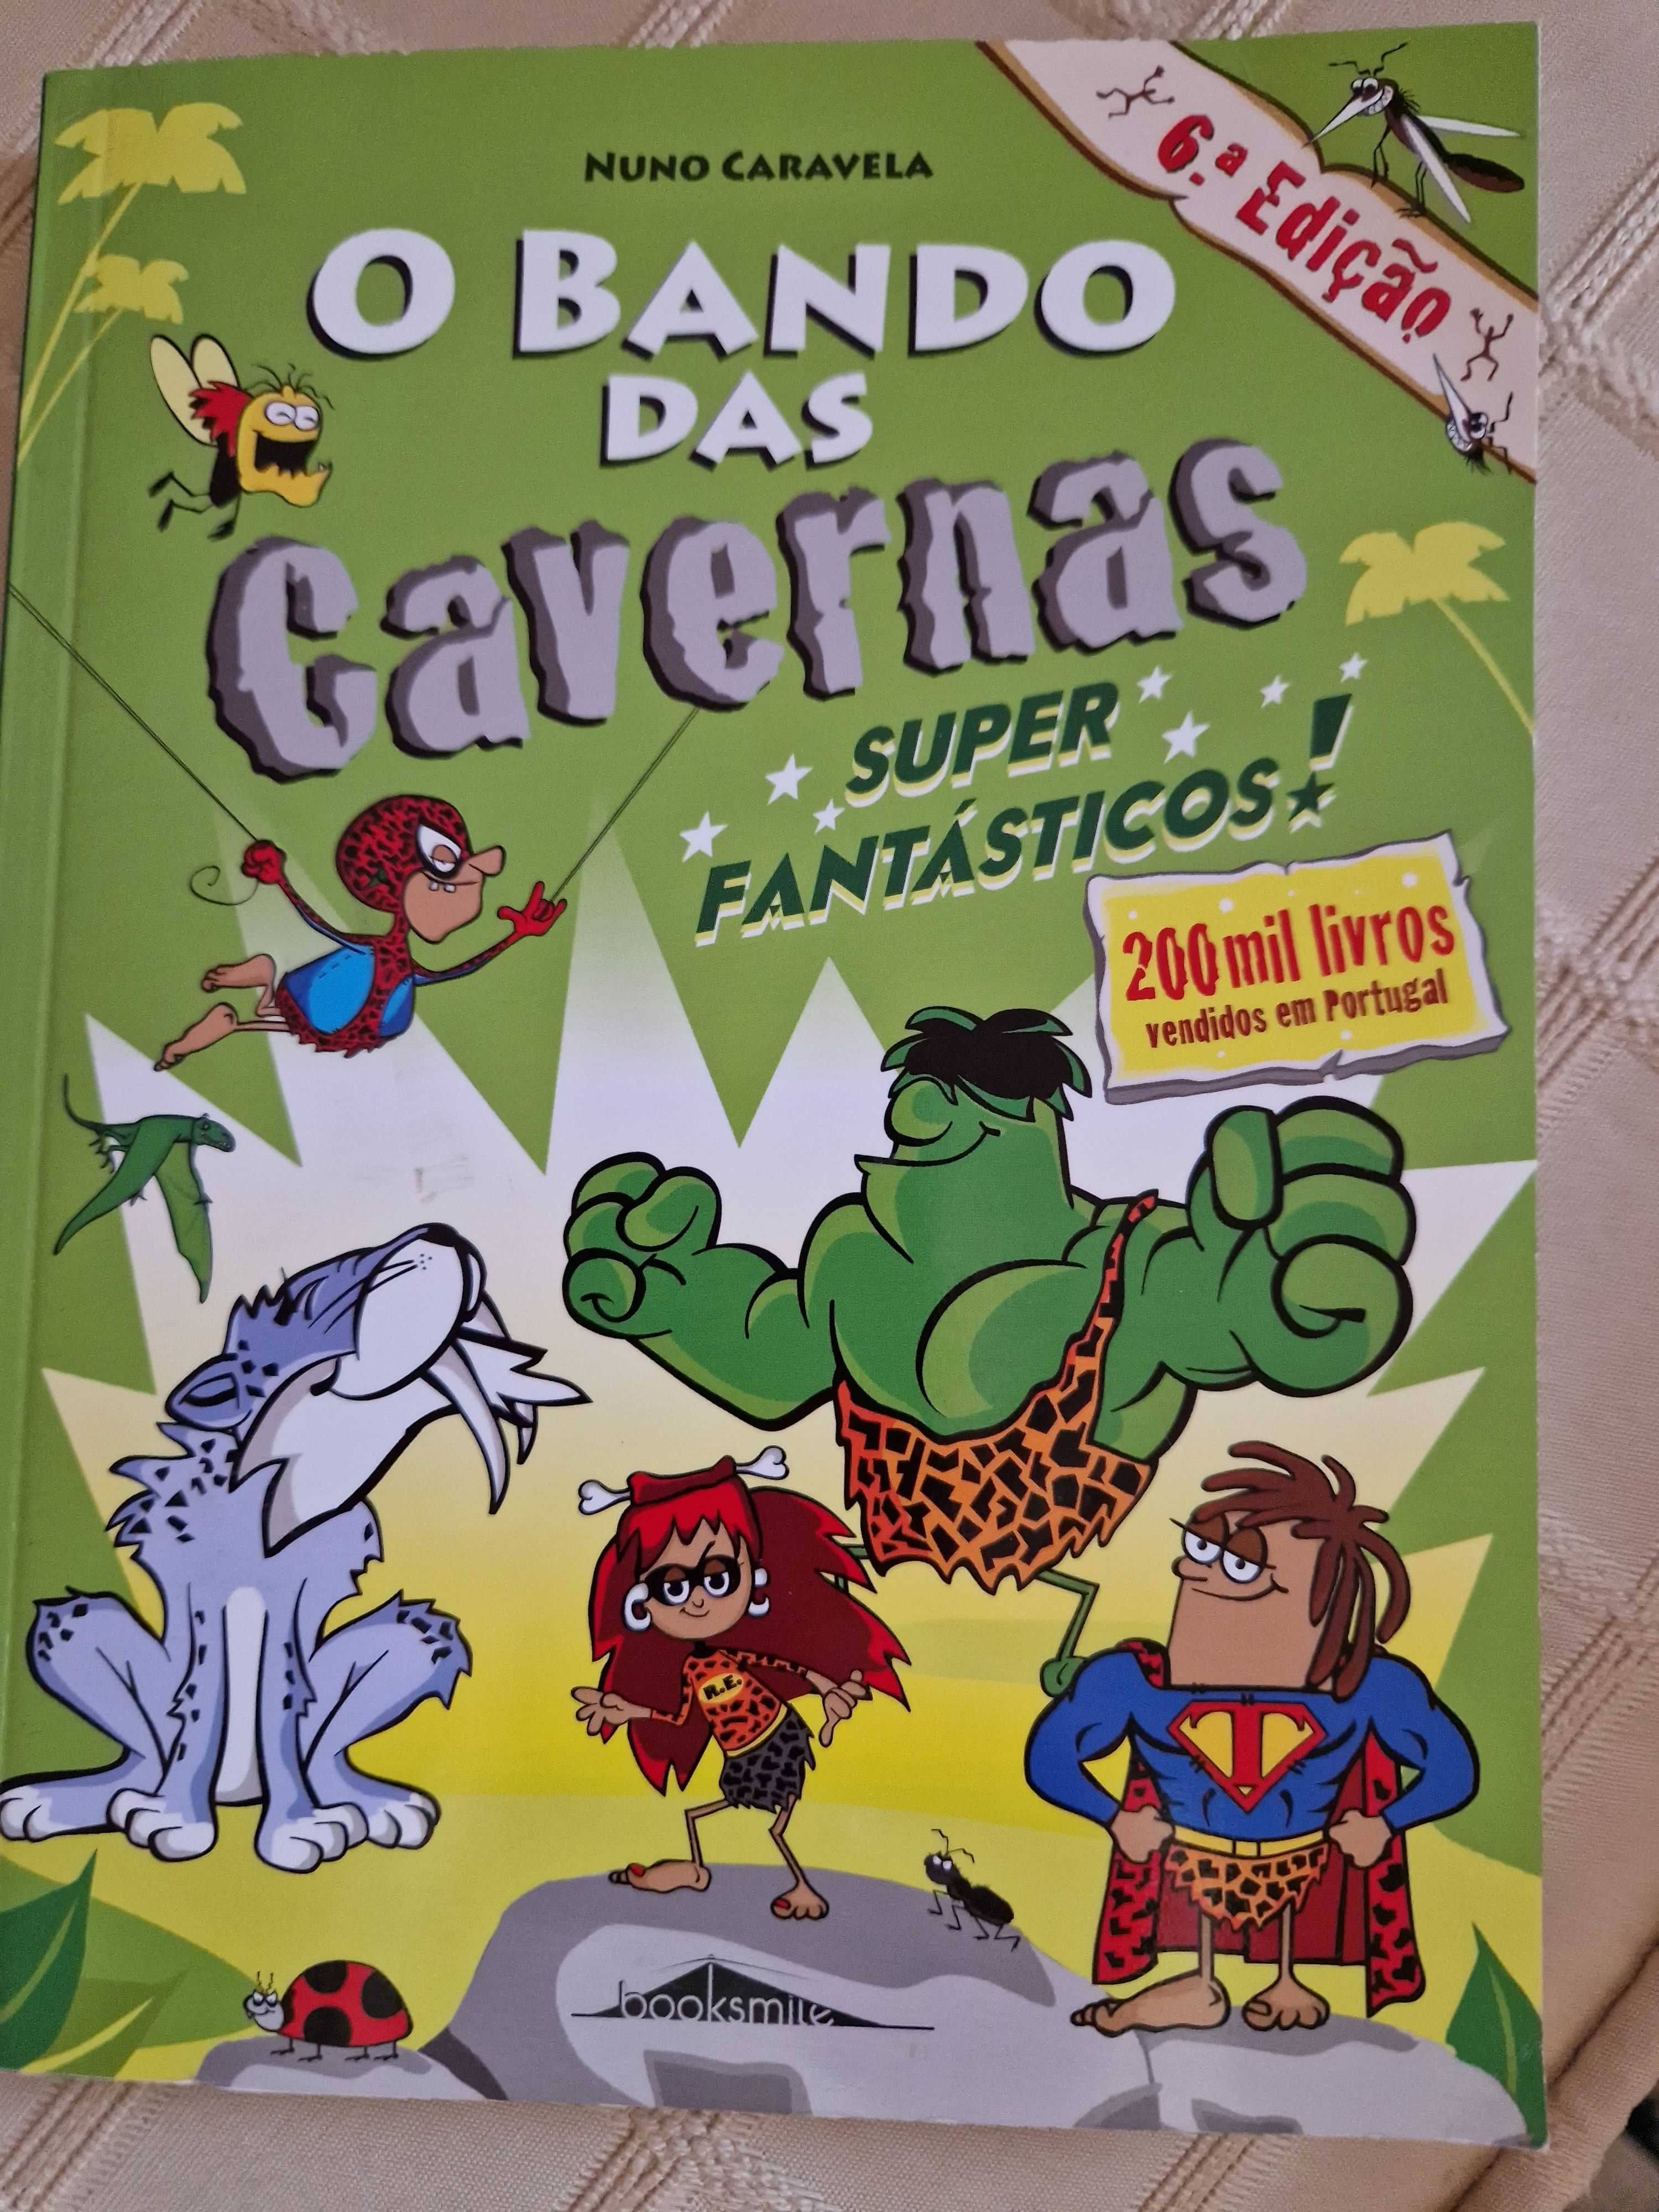 Livro O Bando das cavernas n.º 5 "Super Fantásticos"